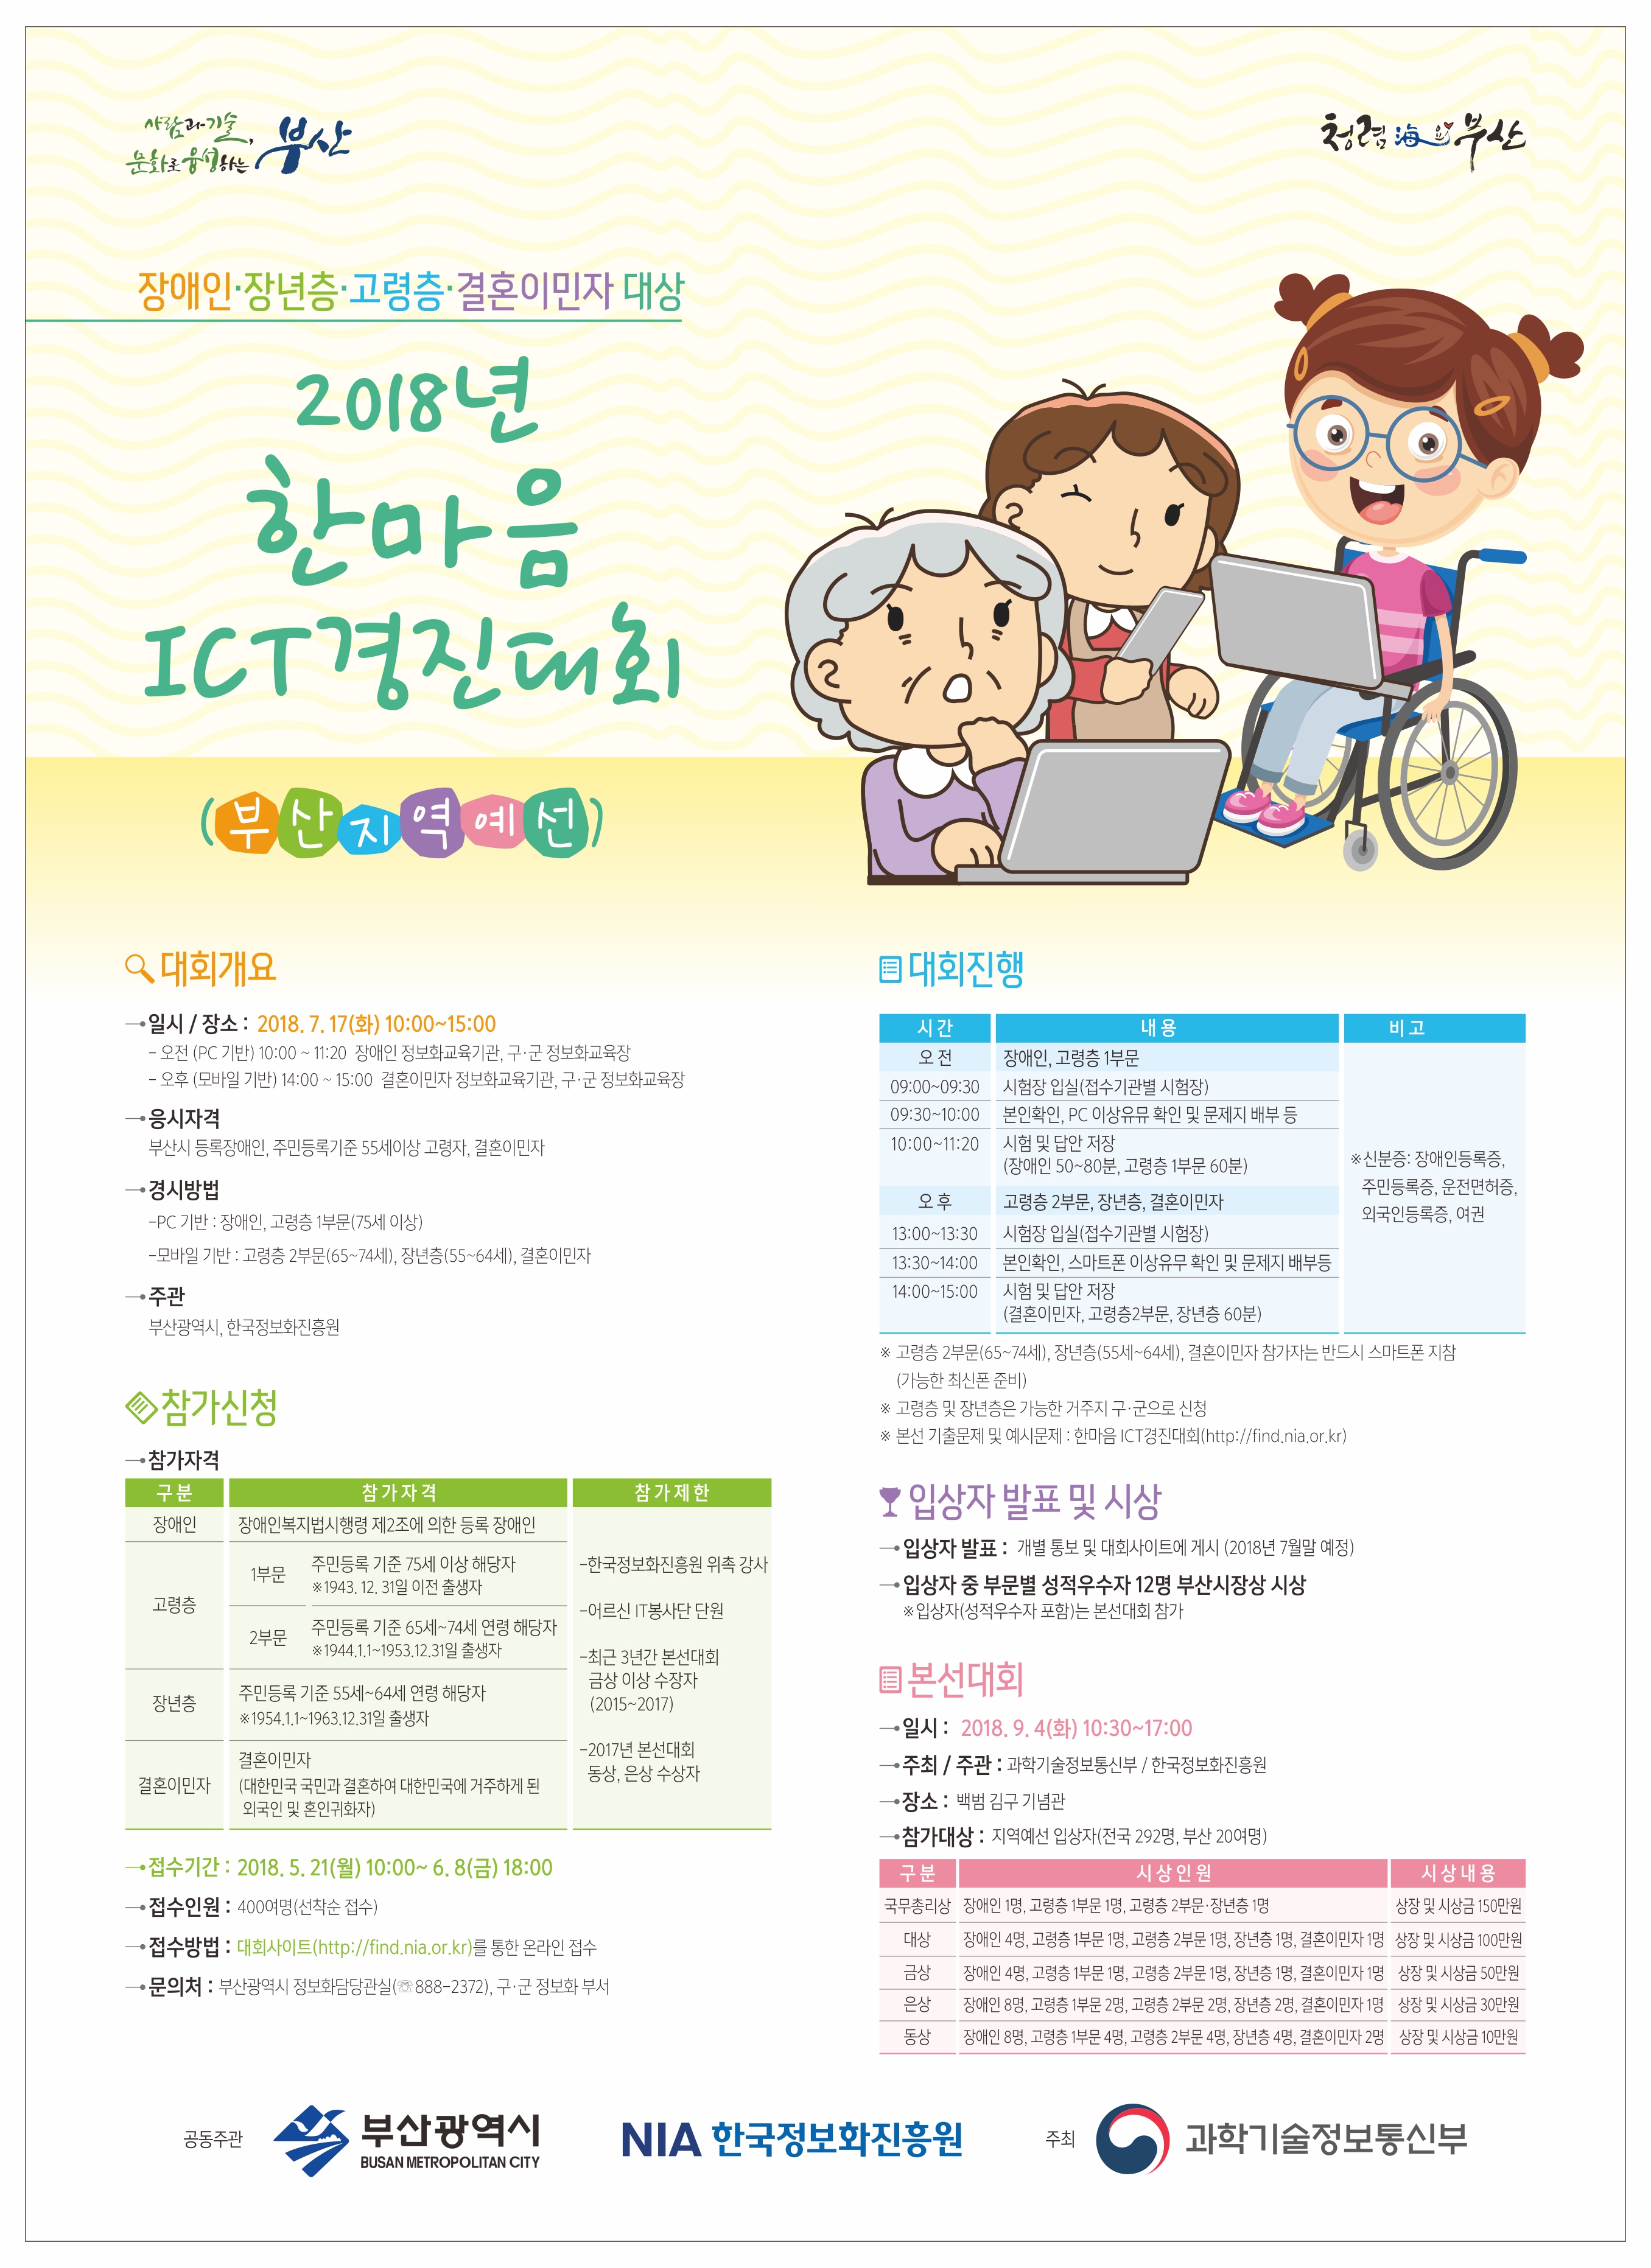 2018년 한마음 ICT 경진대회 부산예선 개최 안내